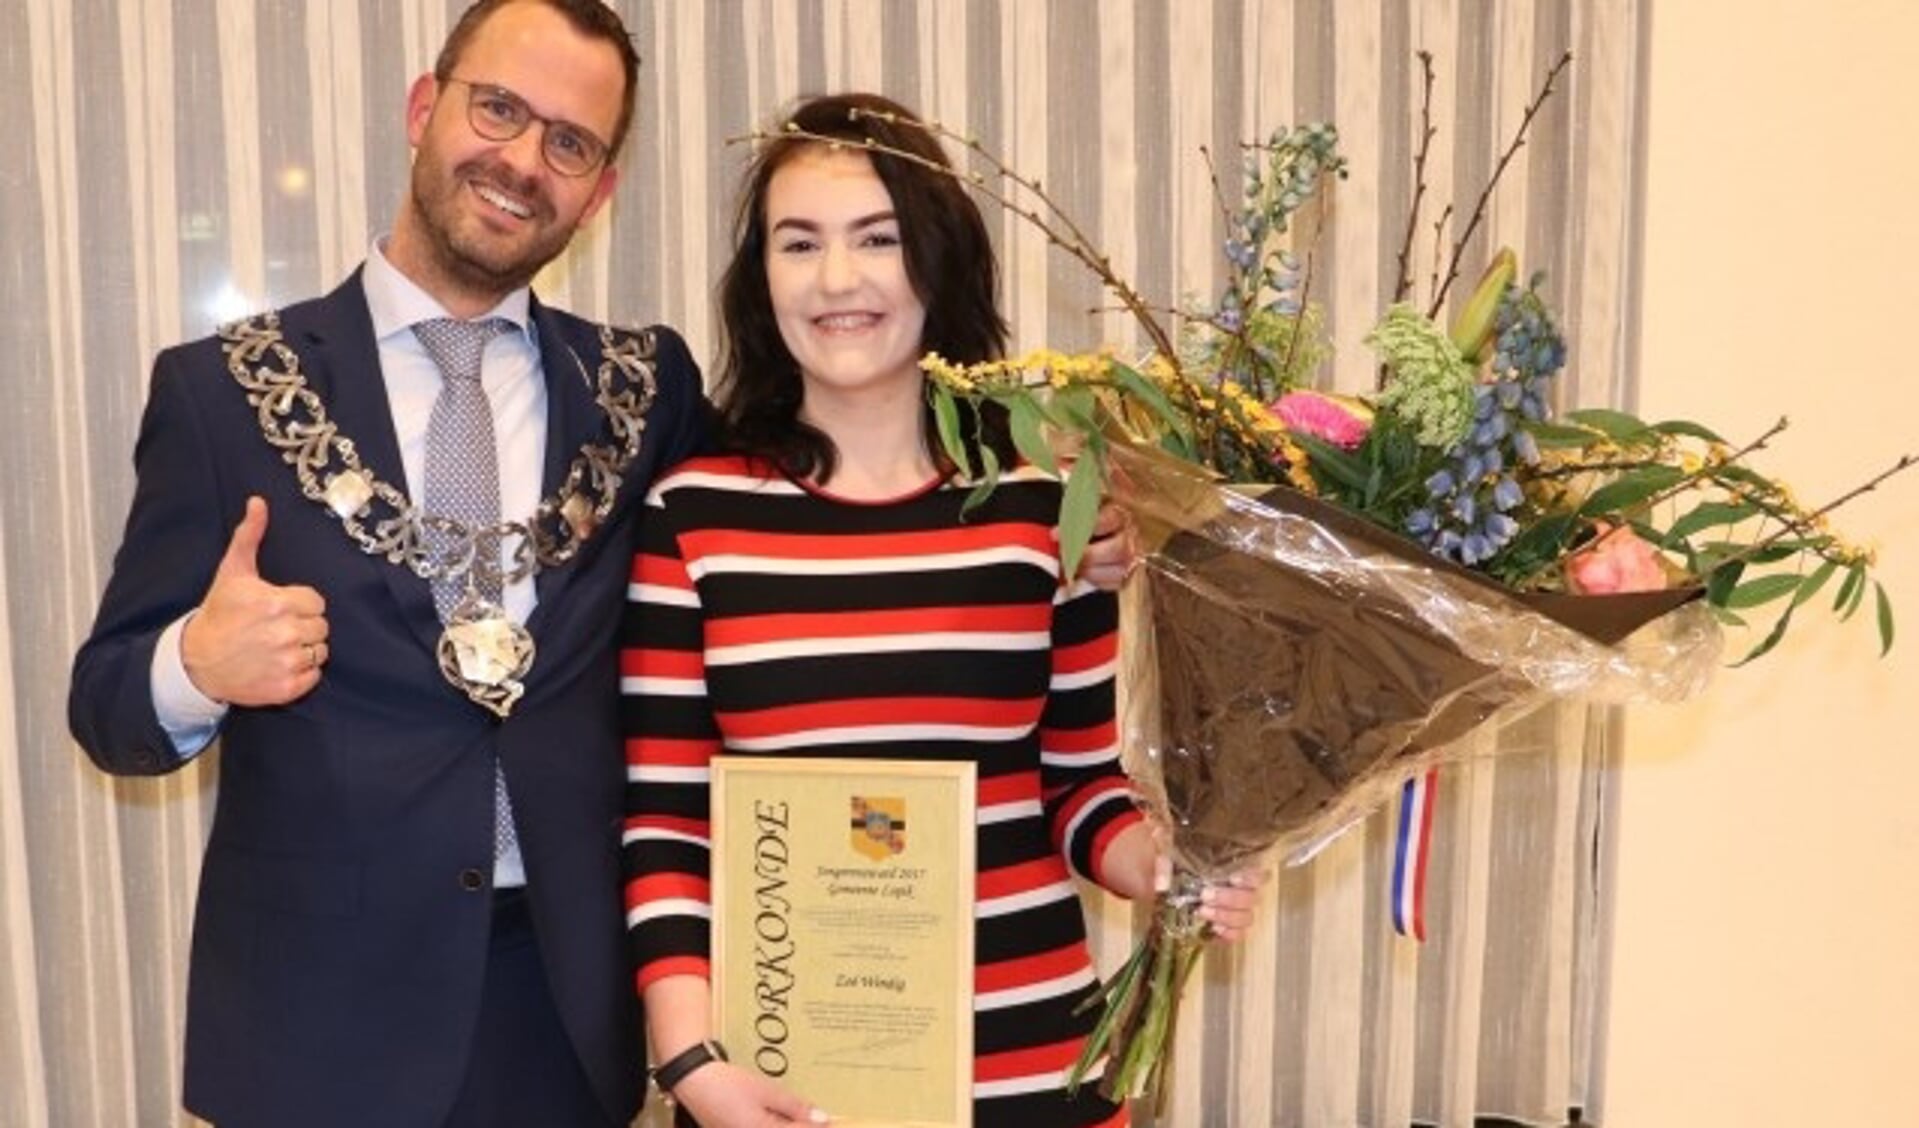 De 15-jarige Zoë Windig kreeg de award uit handen van burgemeester De Graaf. (Foto: gemeente Lopik) 